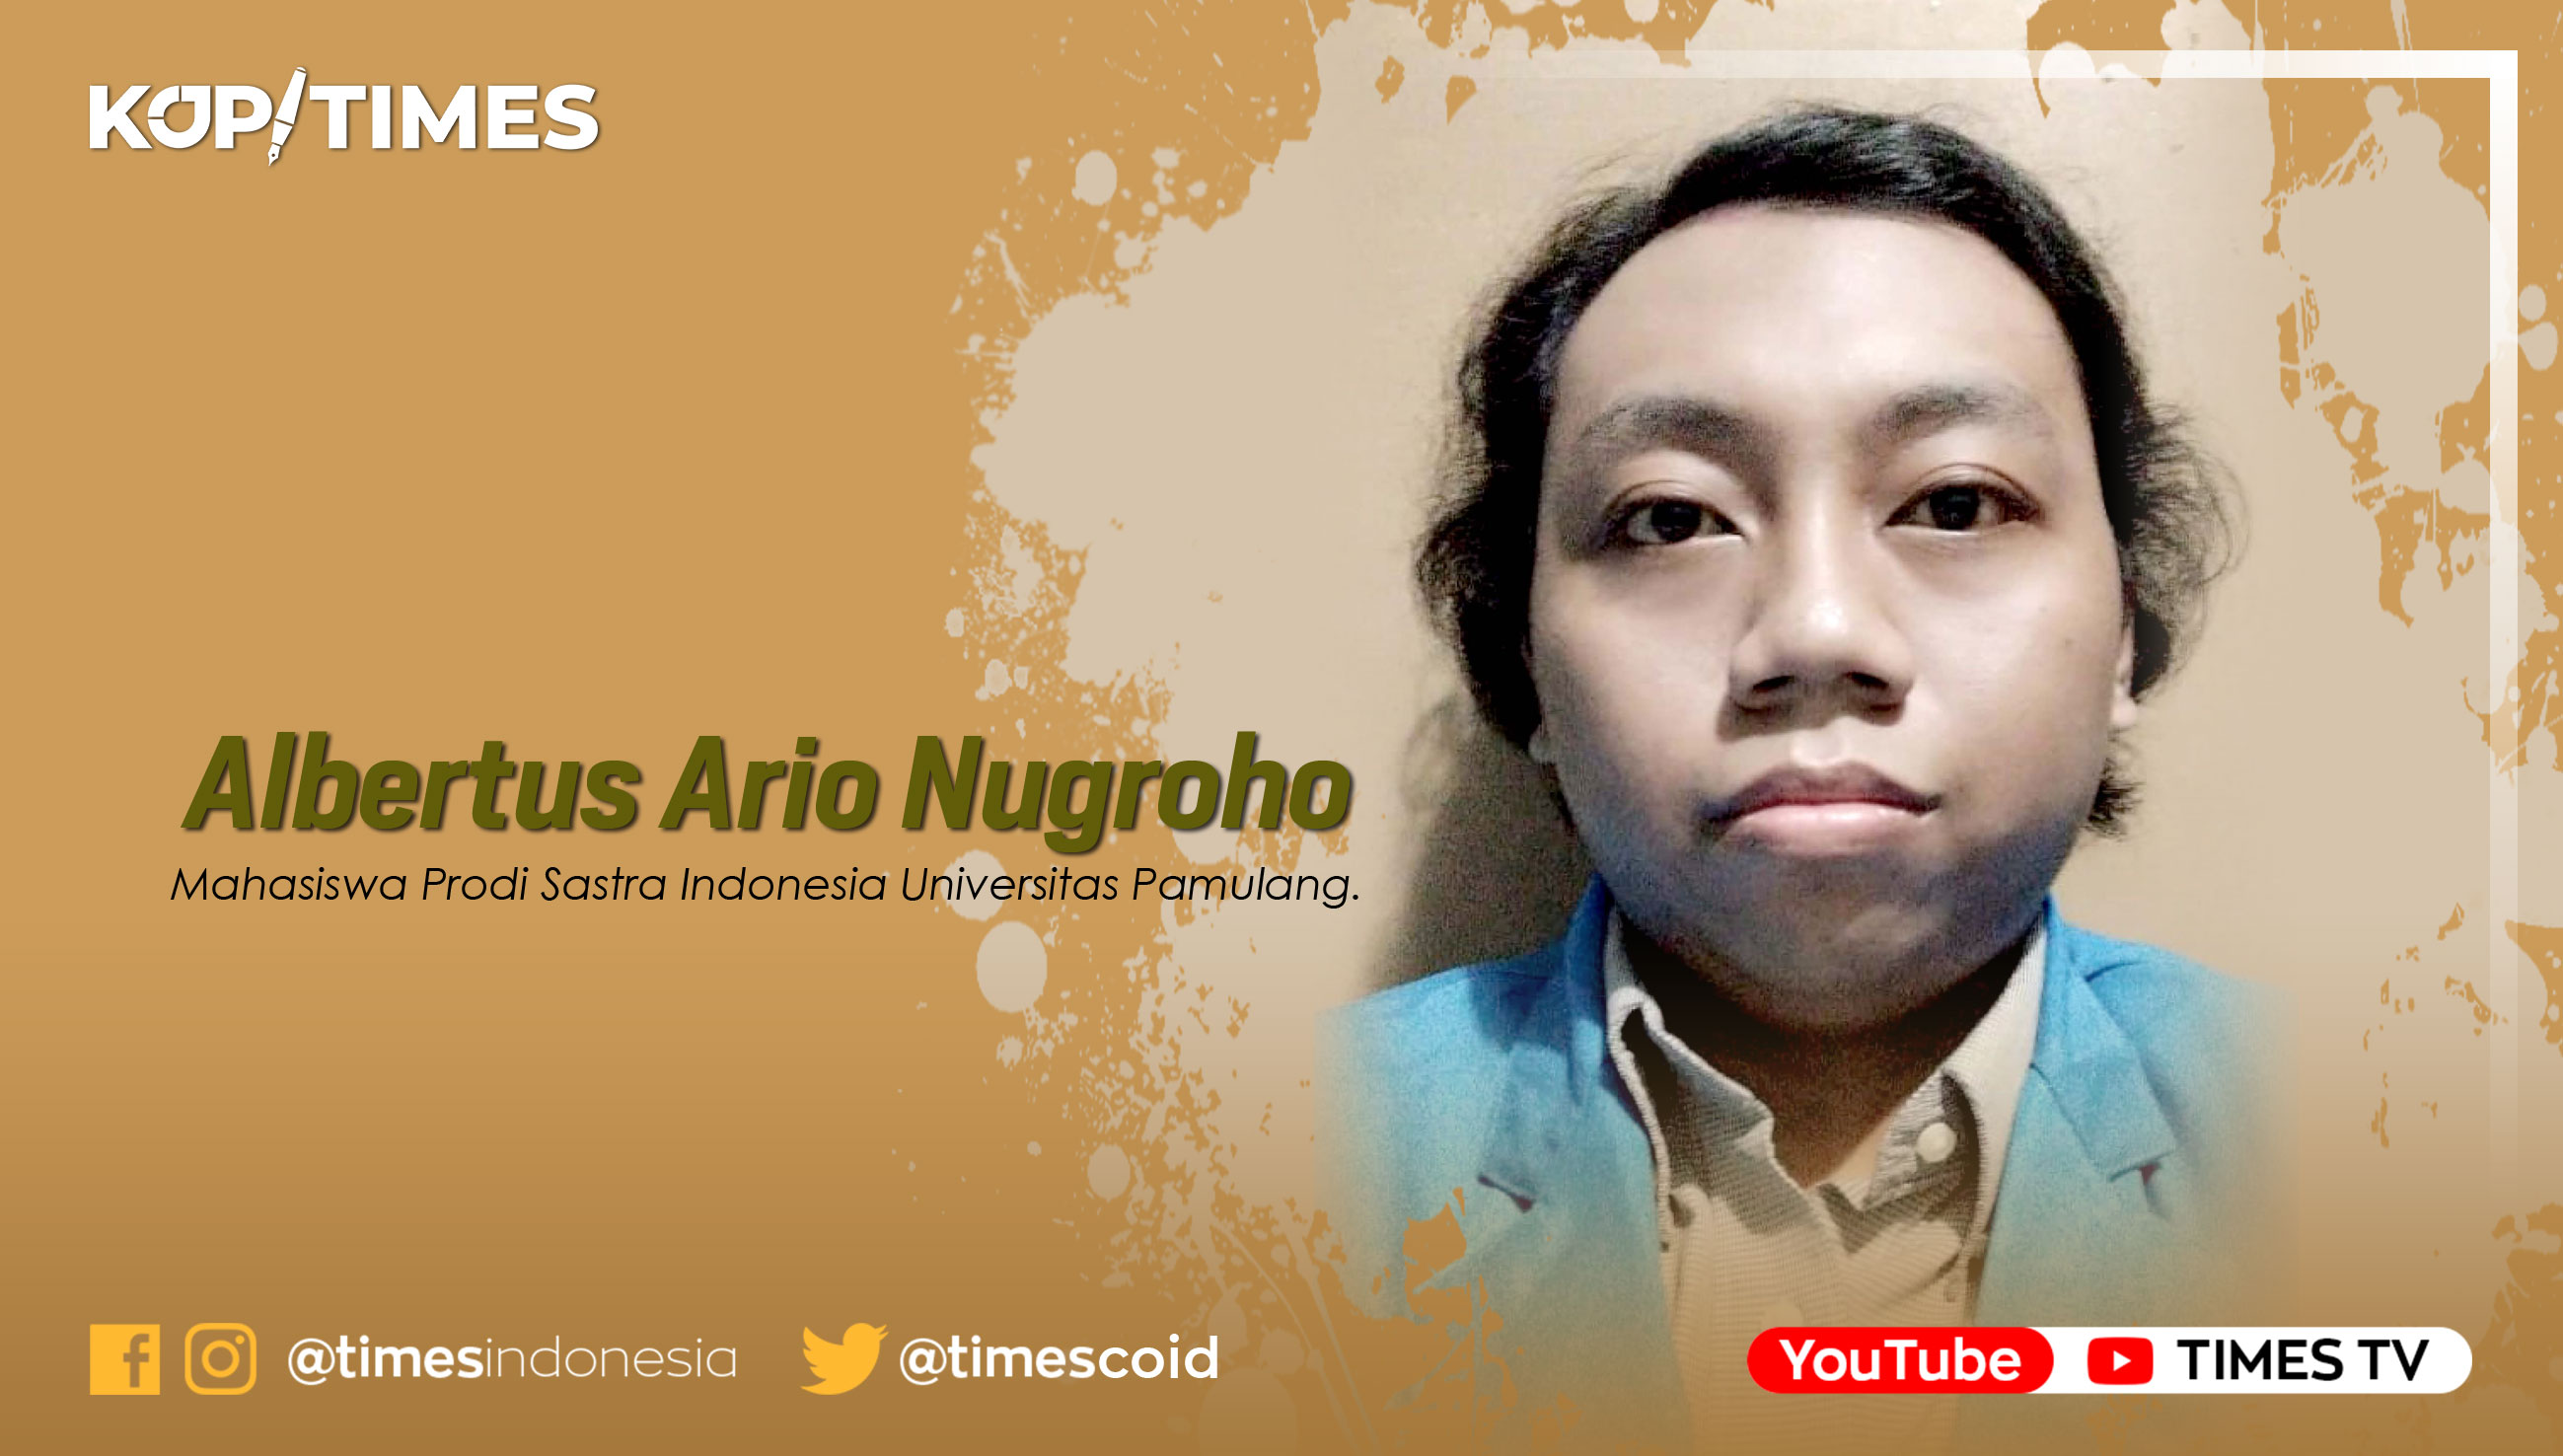 Albertus Ario Nugroho, Mahasiswa Prodi Sastra Indonesia Universitas Pamulang.